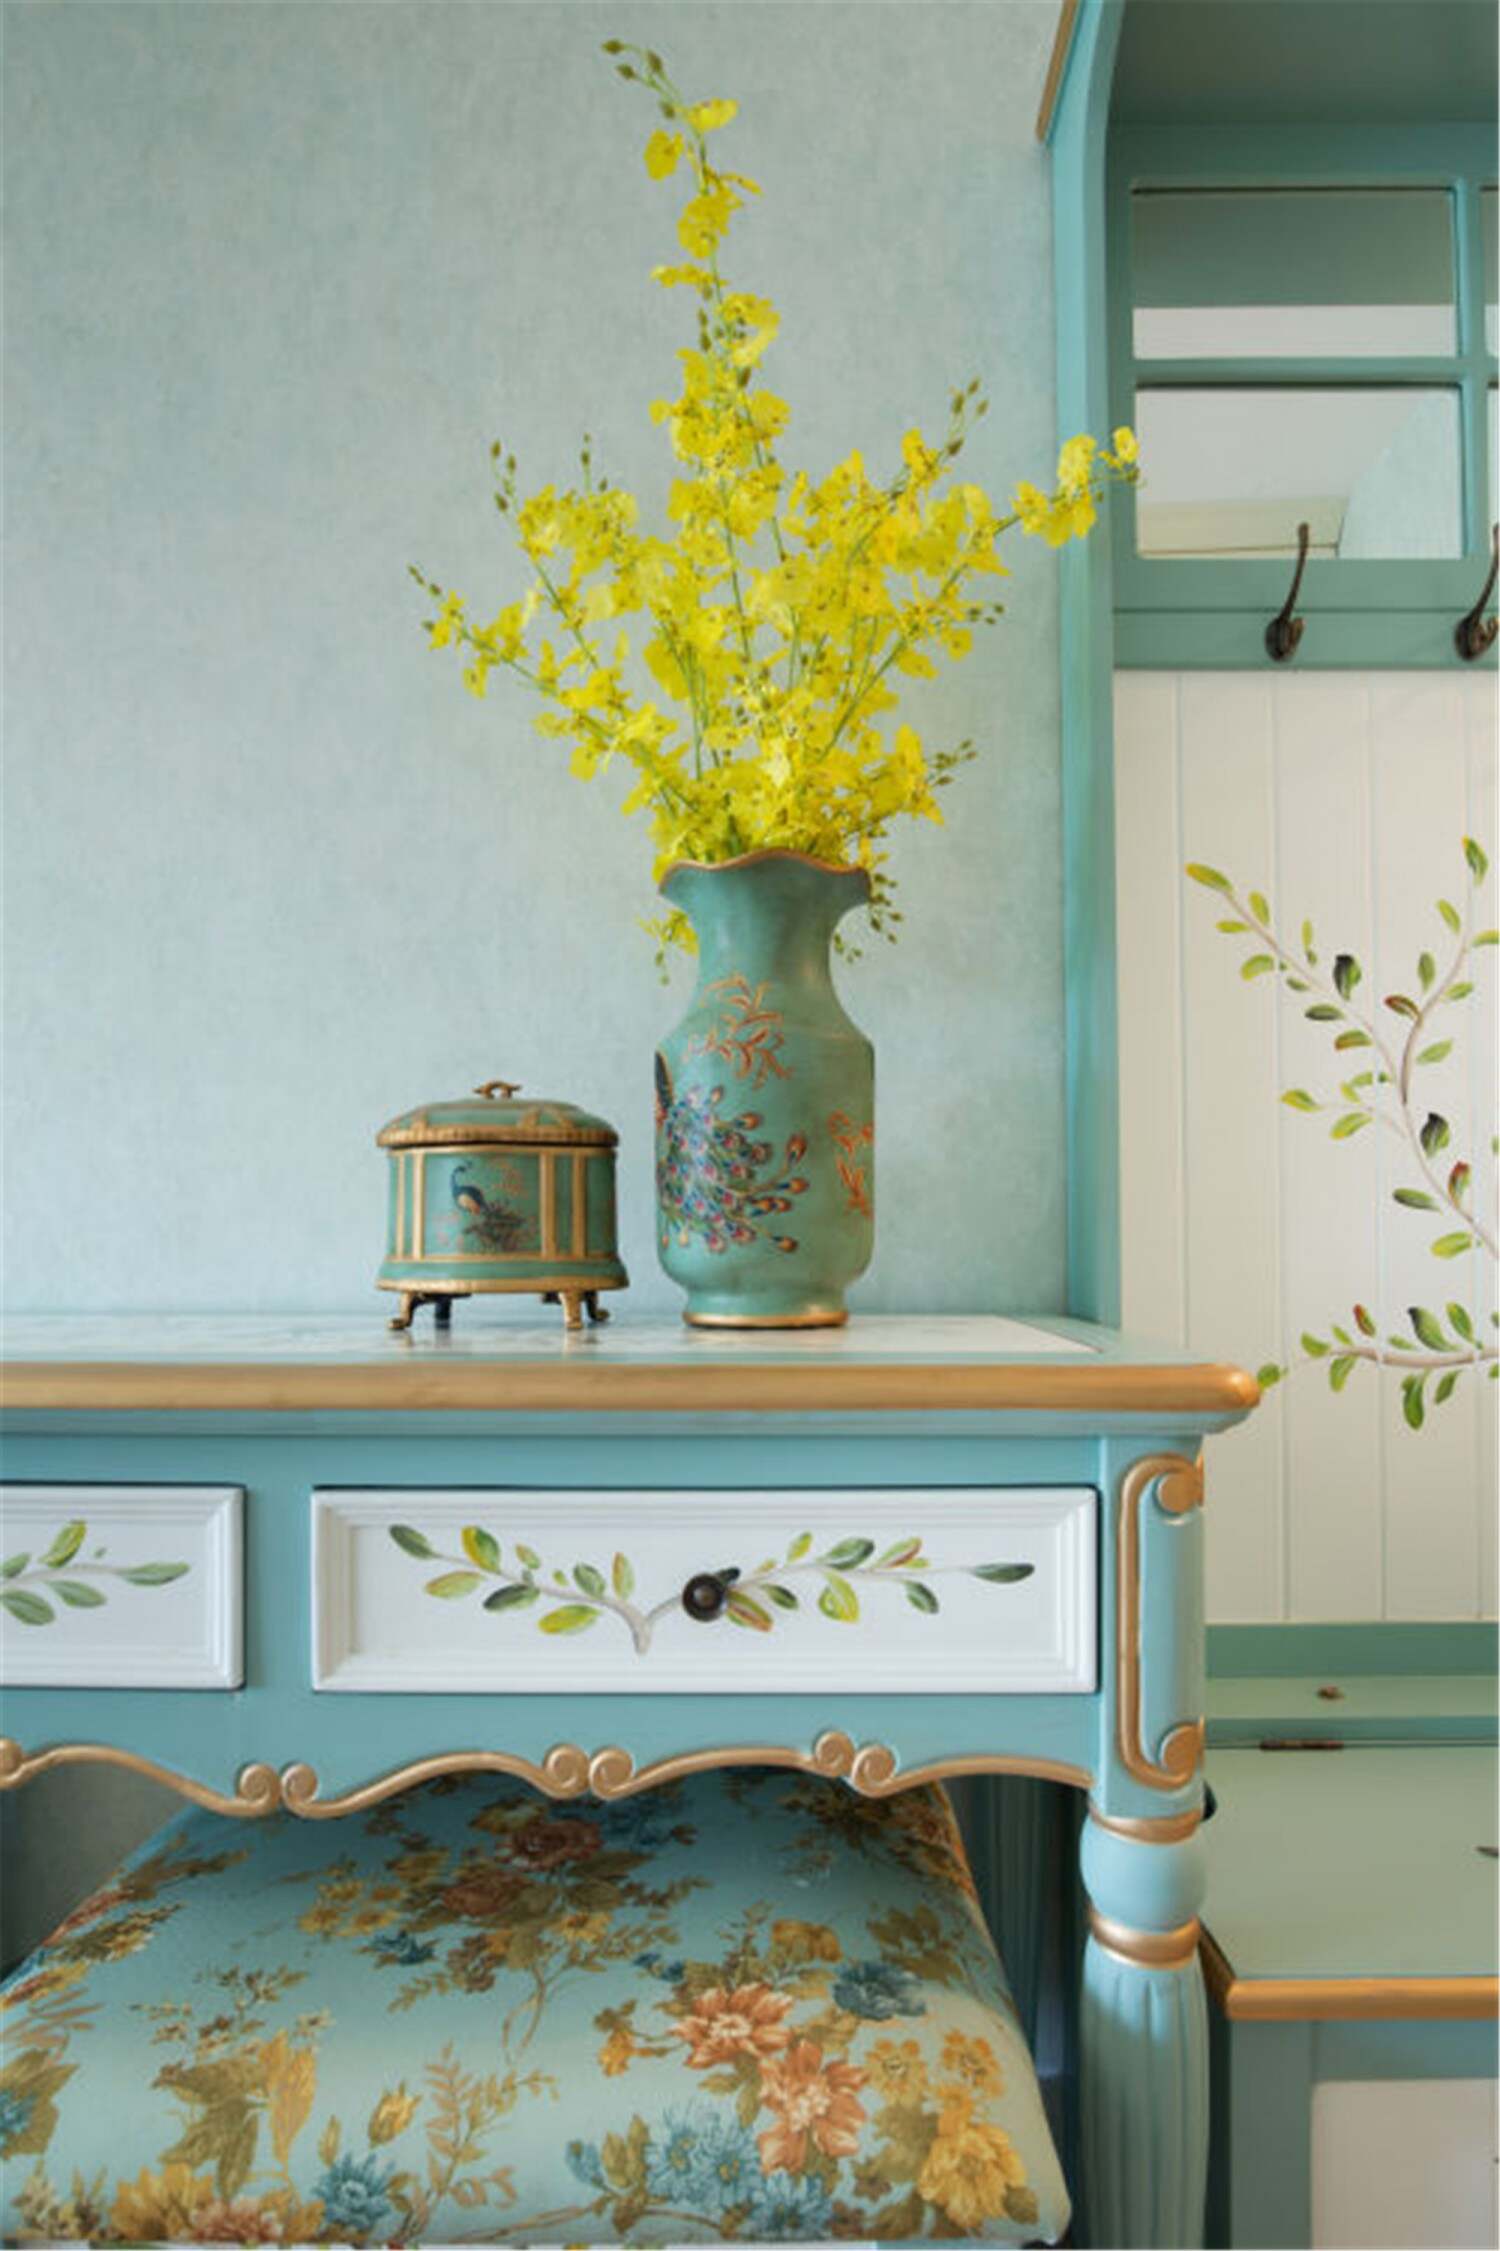 与床头板一致花纹的柜子、花瓶和香薰盒，整个房间的一致性让田园也清新整洁。配上嫩黄色的小花，整个房间如沐春风。